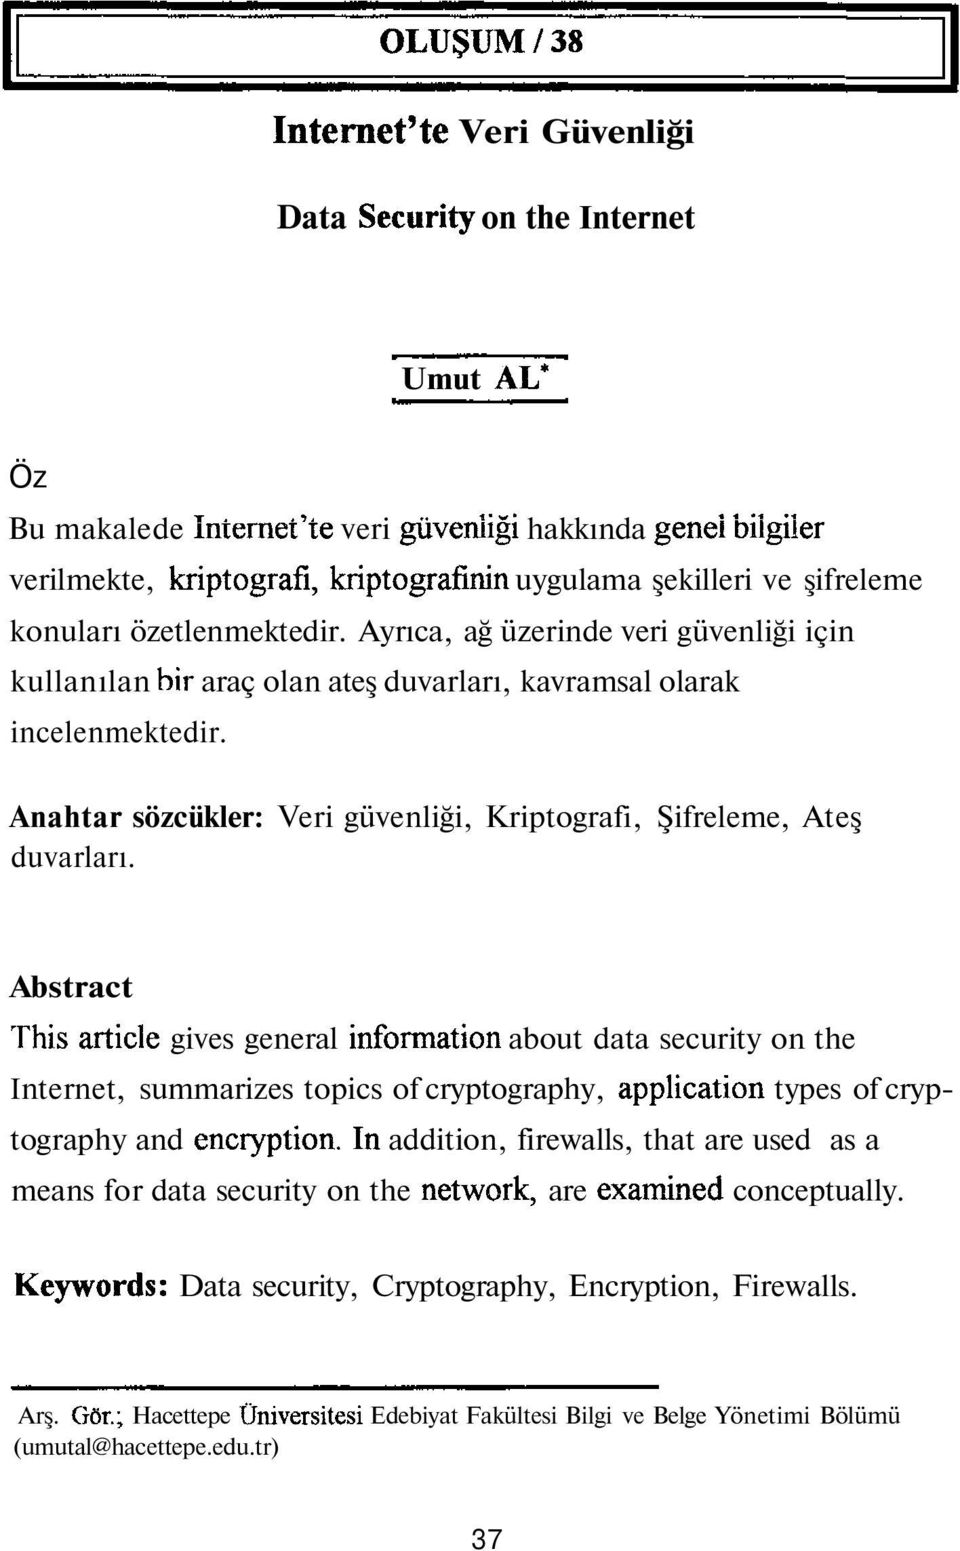 Anahtar sözcükler: Veri güvenliği, Kriptografi, Şifreleme, Ateş duvarları.